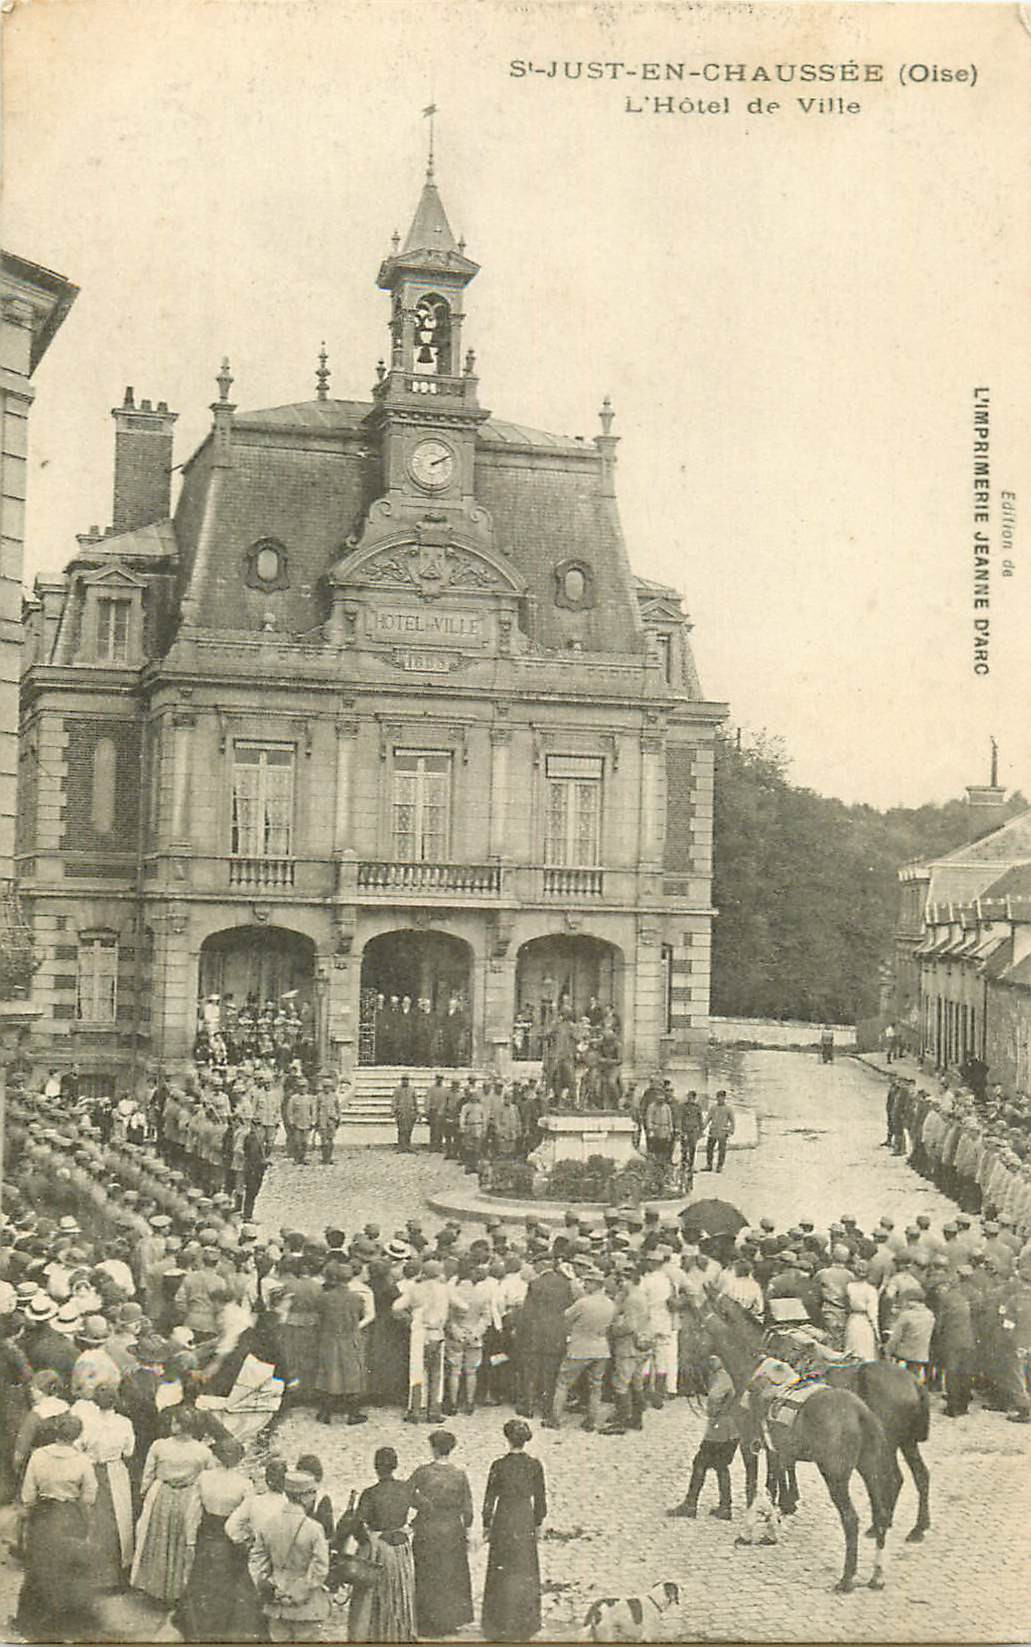 WW 60 SAINT-JUST-EN-CHAUSSEE. Revue militaire devant l'Hôtel de Ville 1917